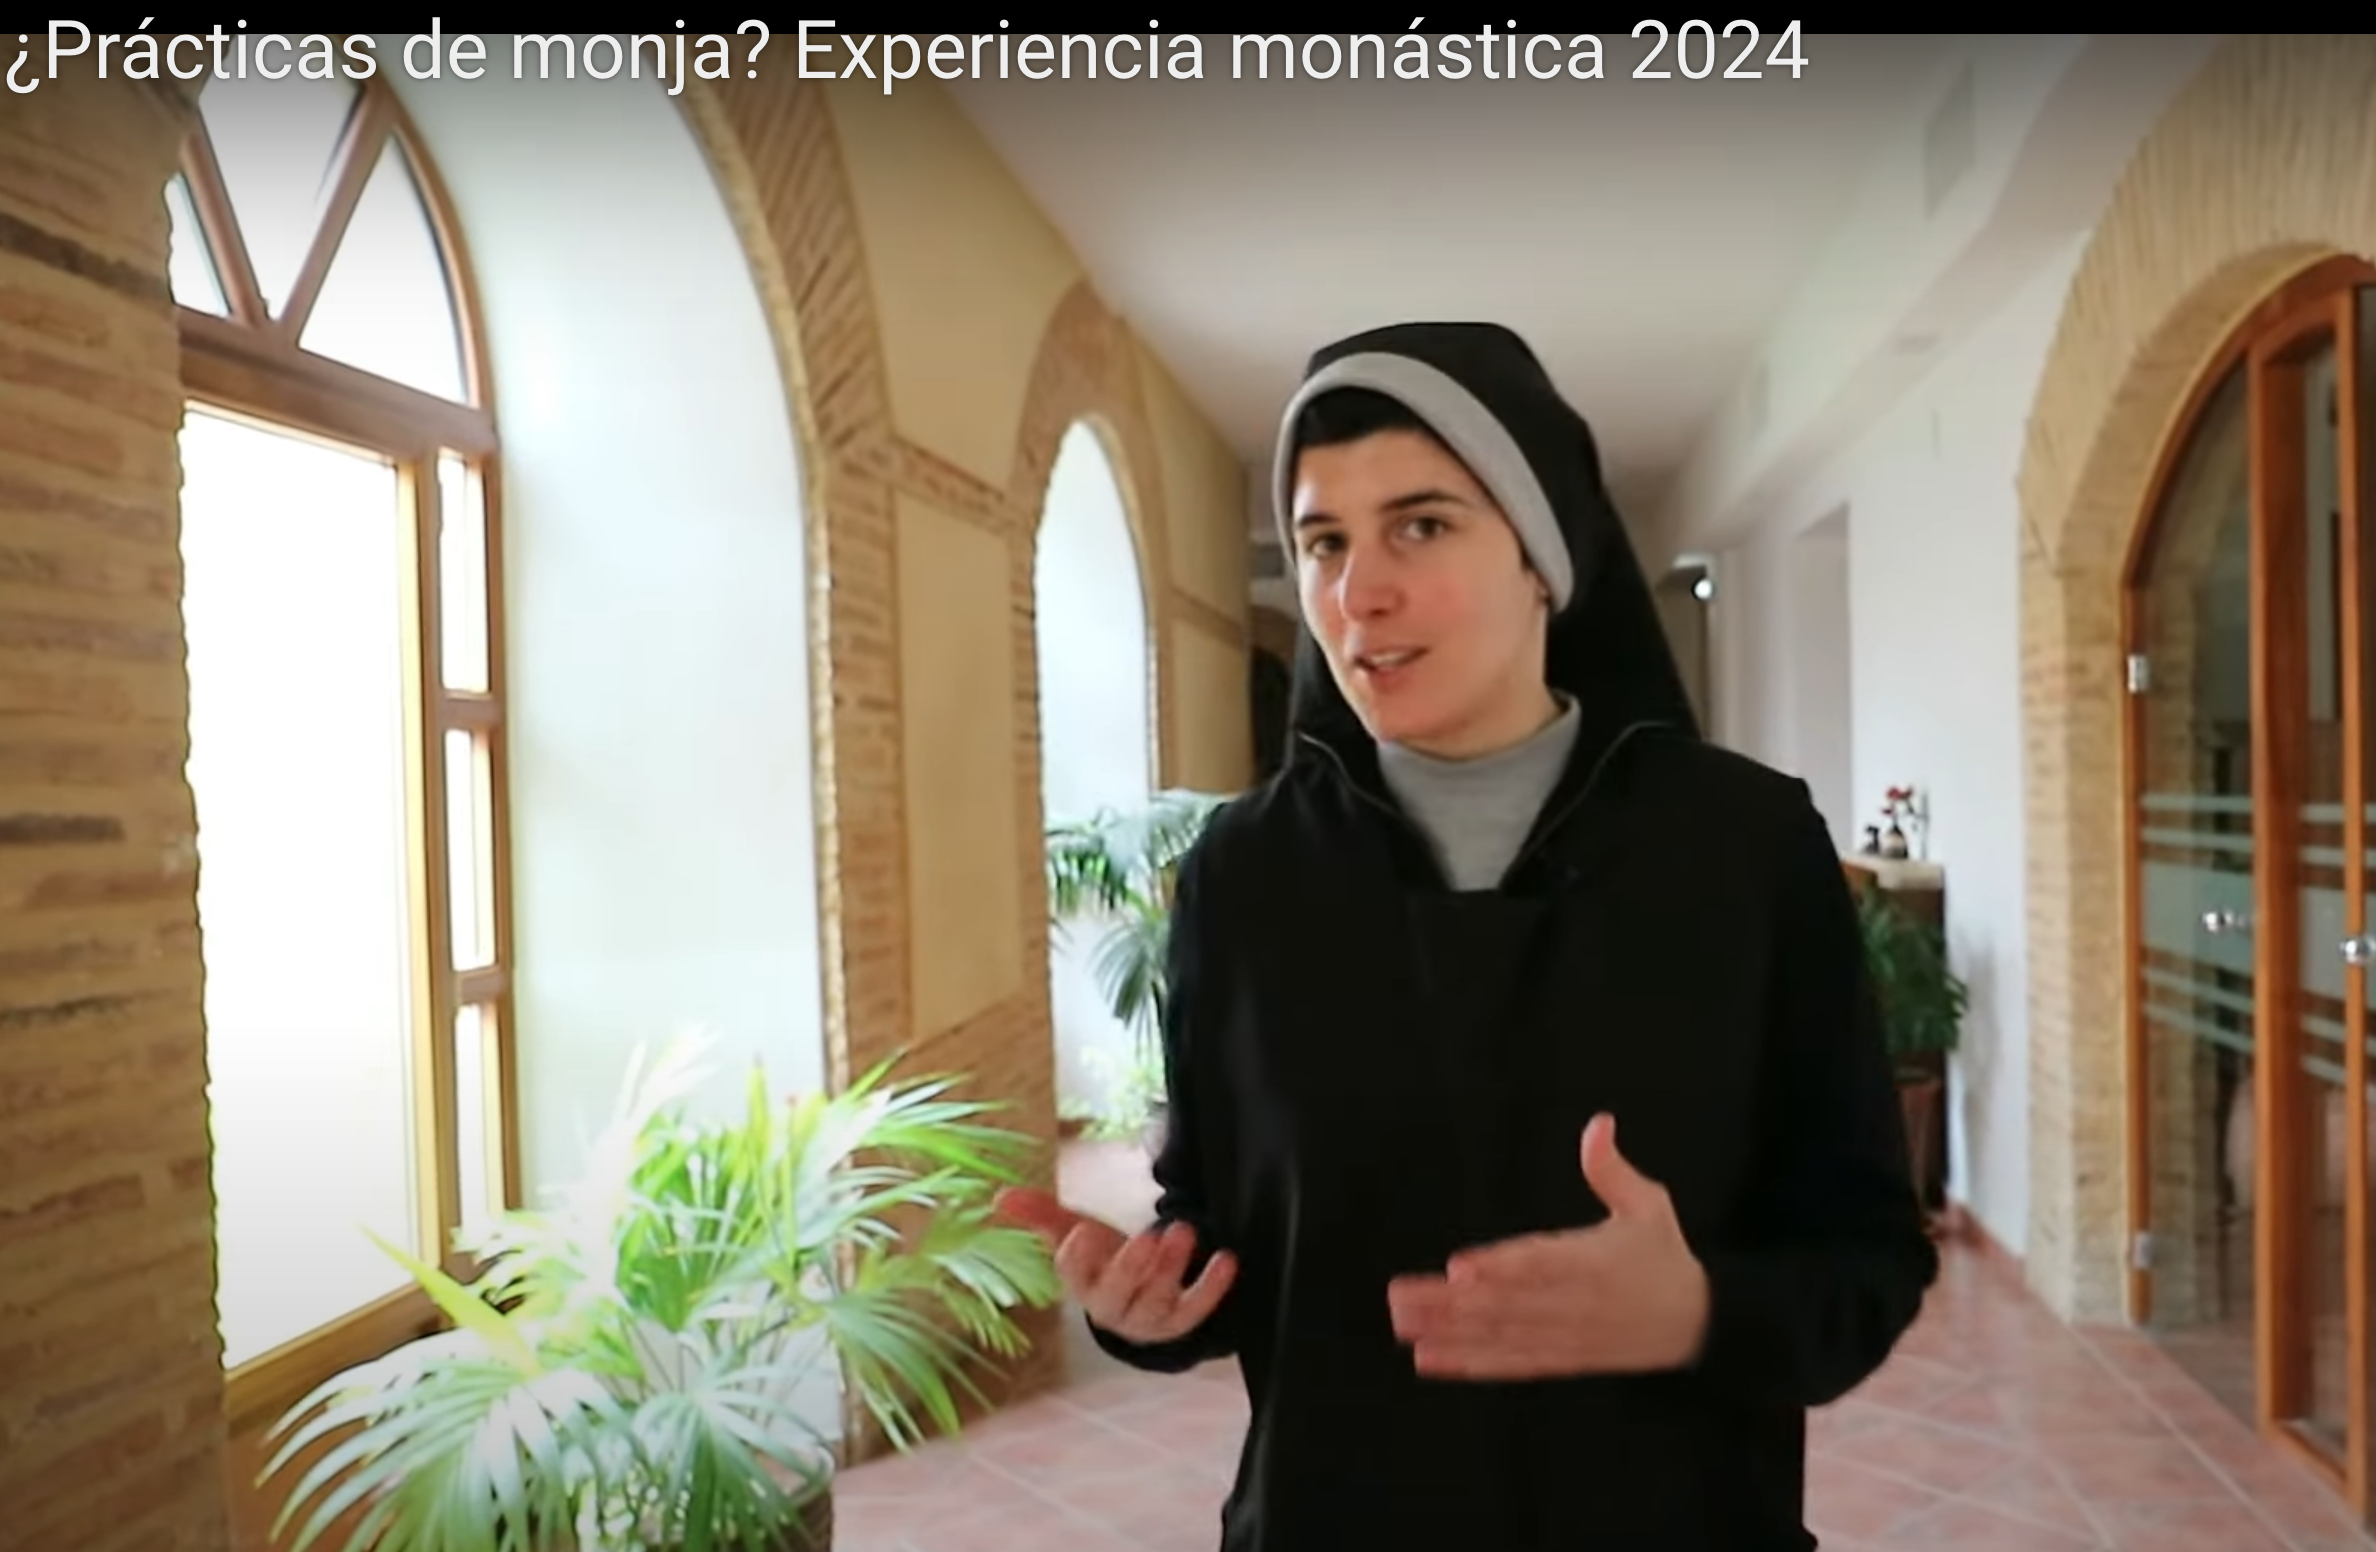 Sor Marta invitando a las prácticas de monja.